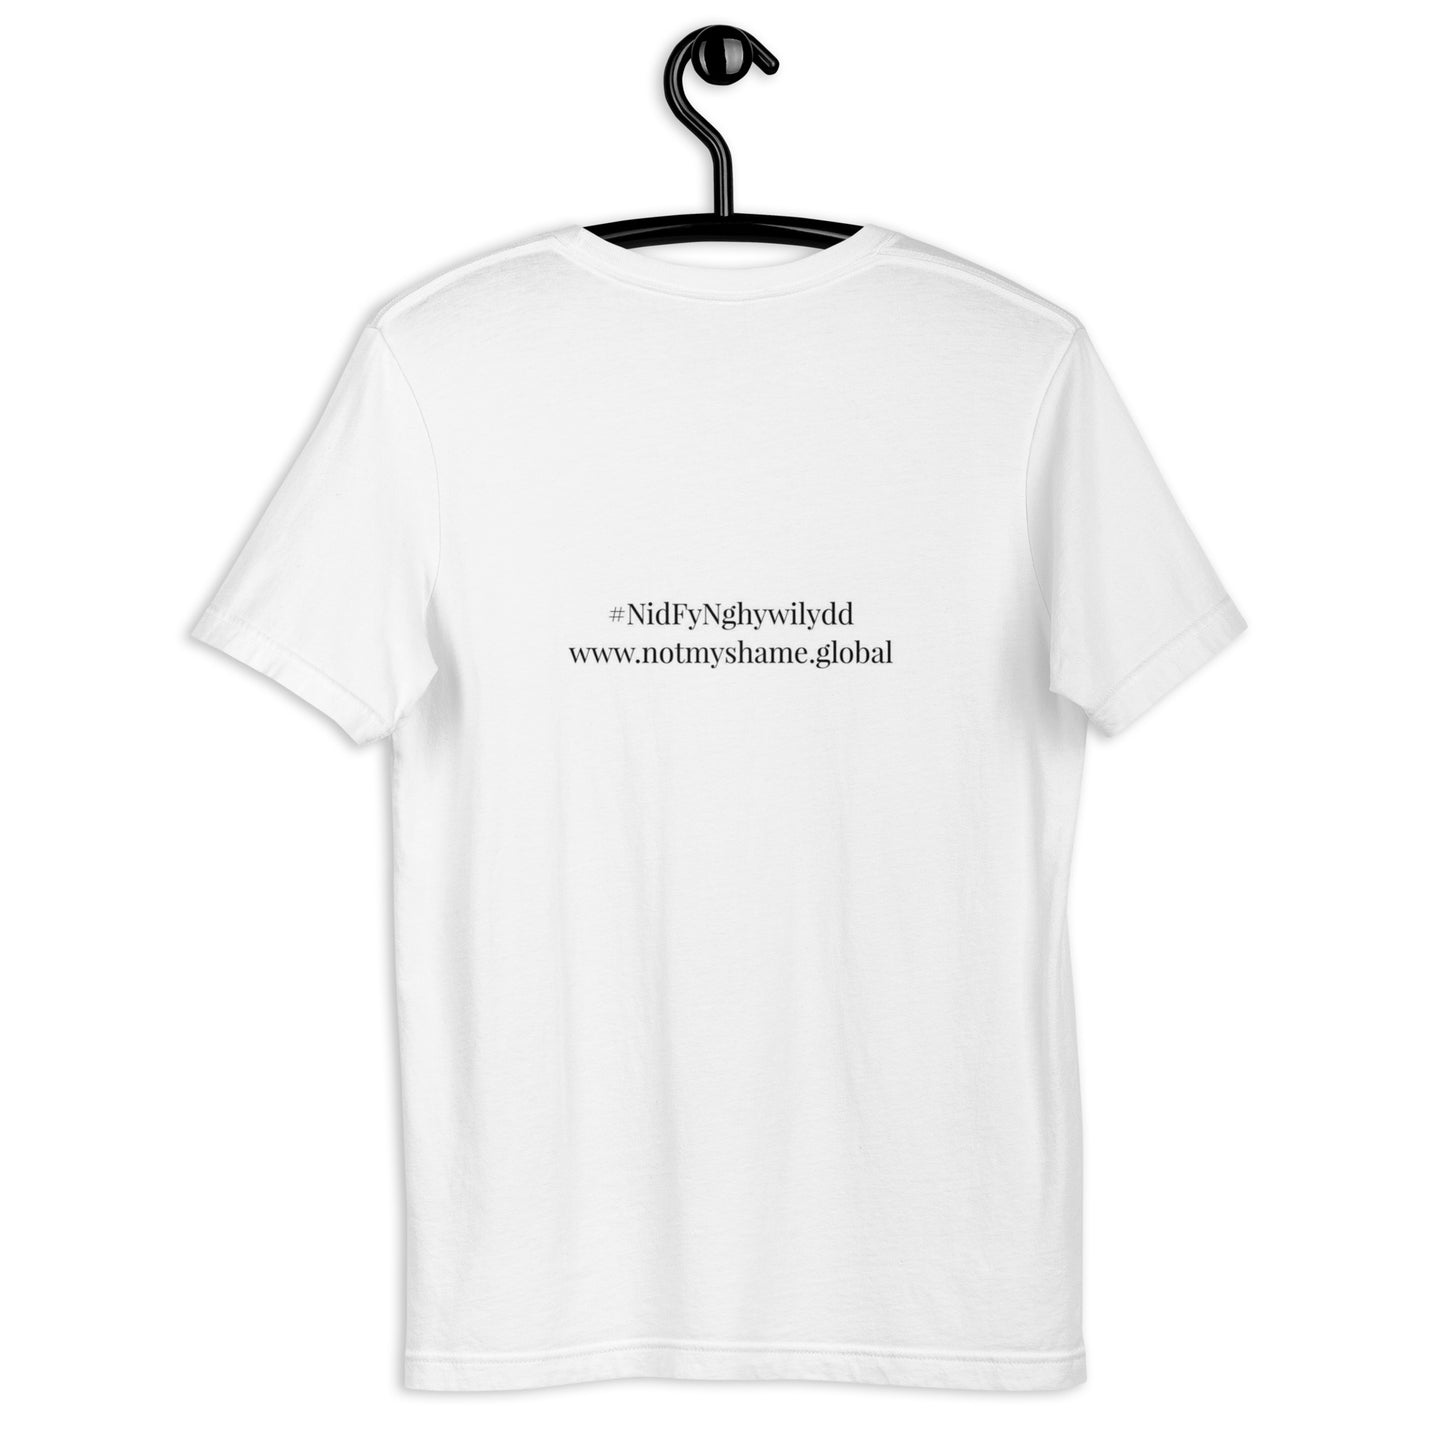 #NidFyNghywilydd Unisex t-shirt